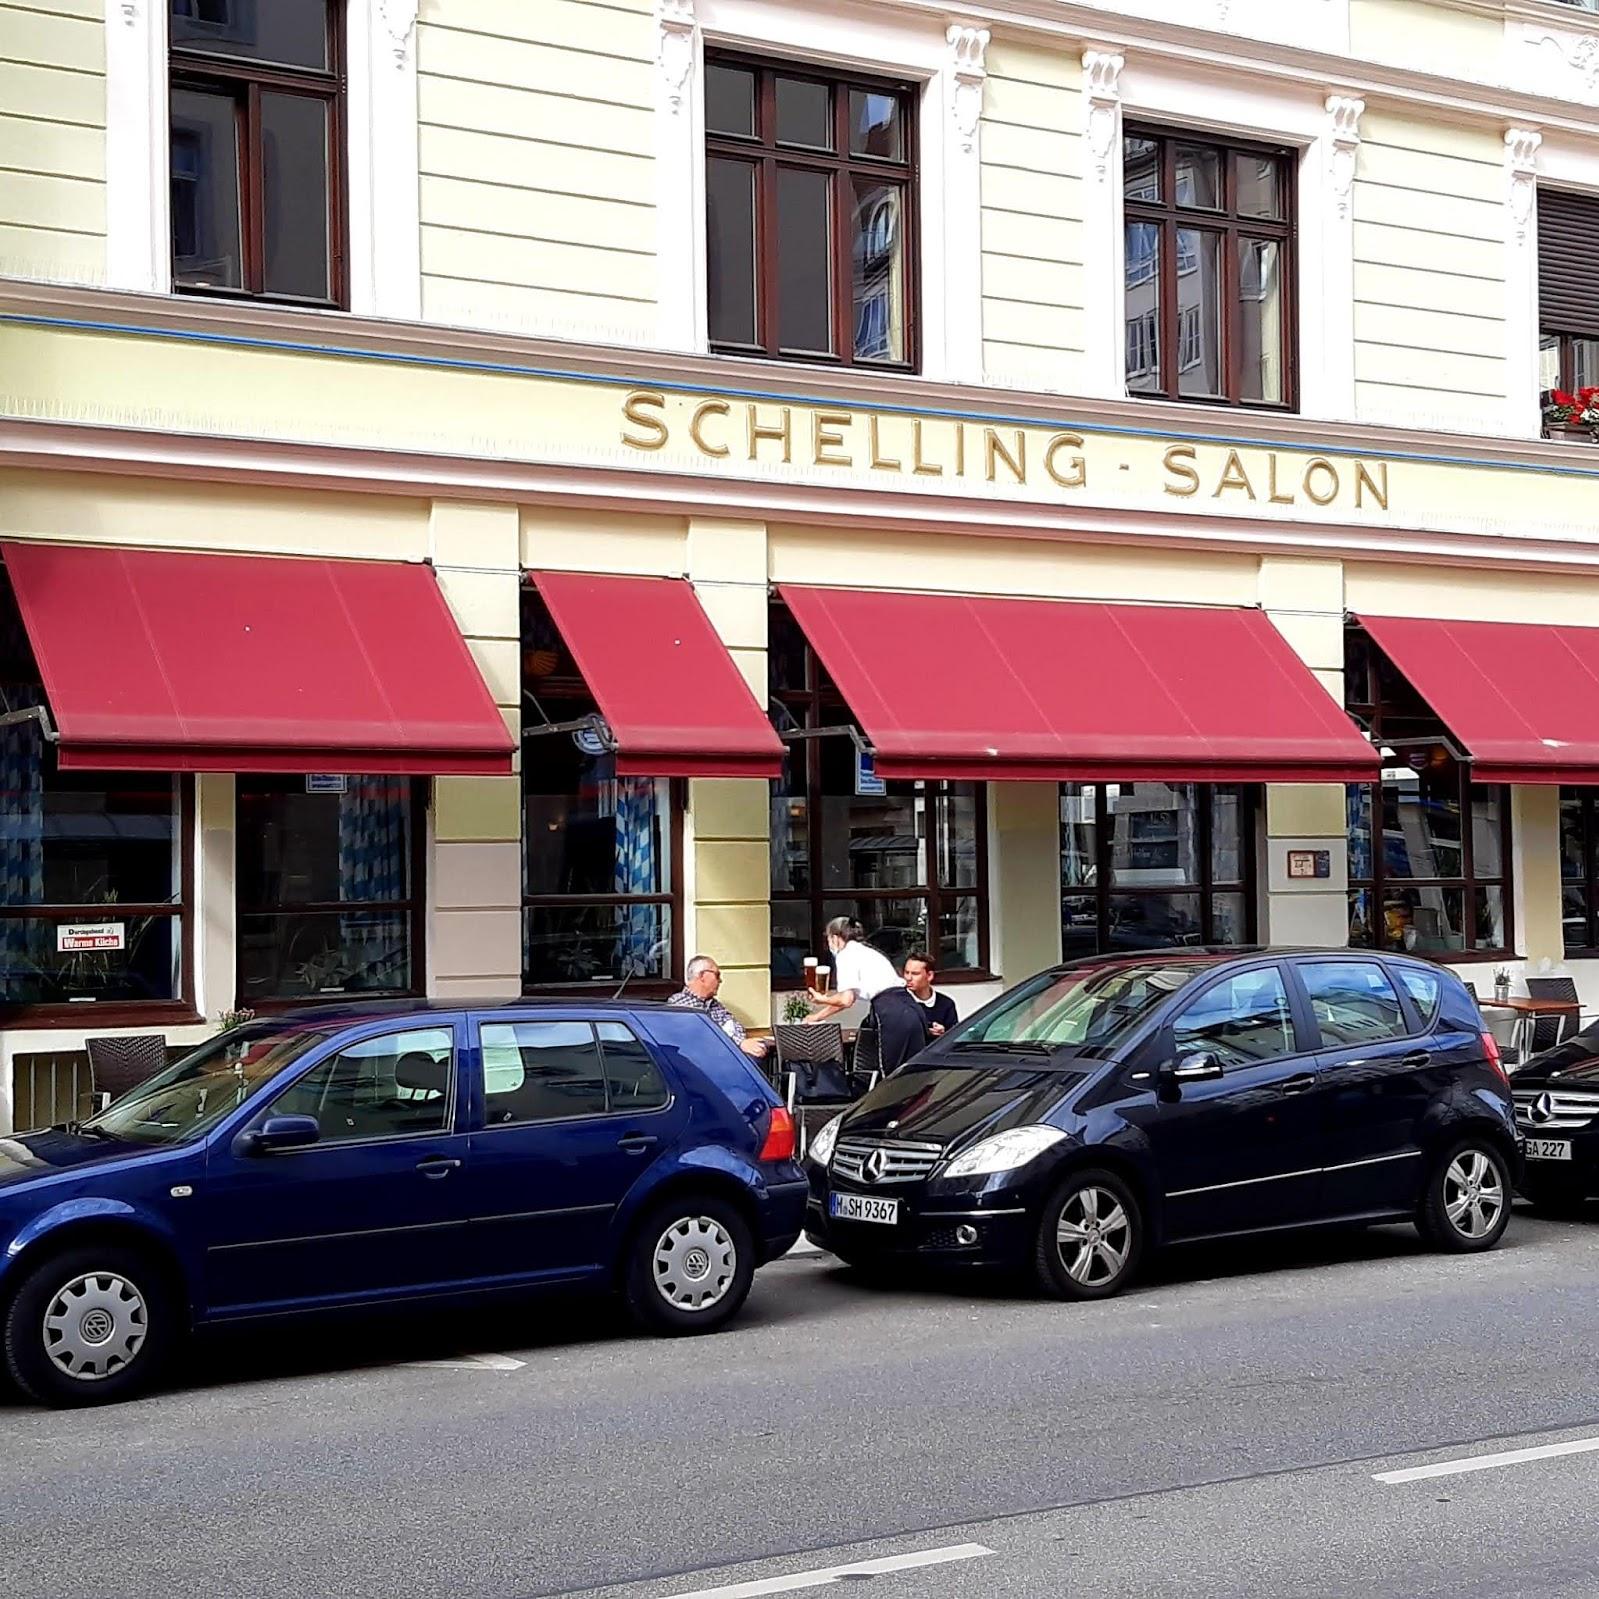 Restaurant "Schelling-Salon" in München